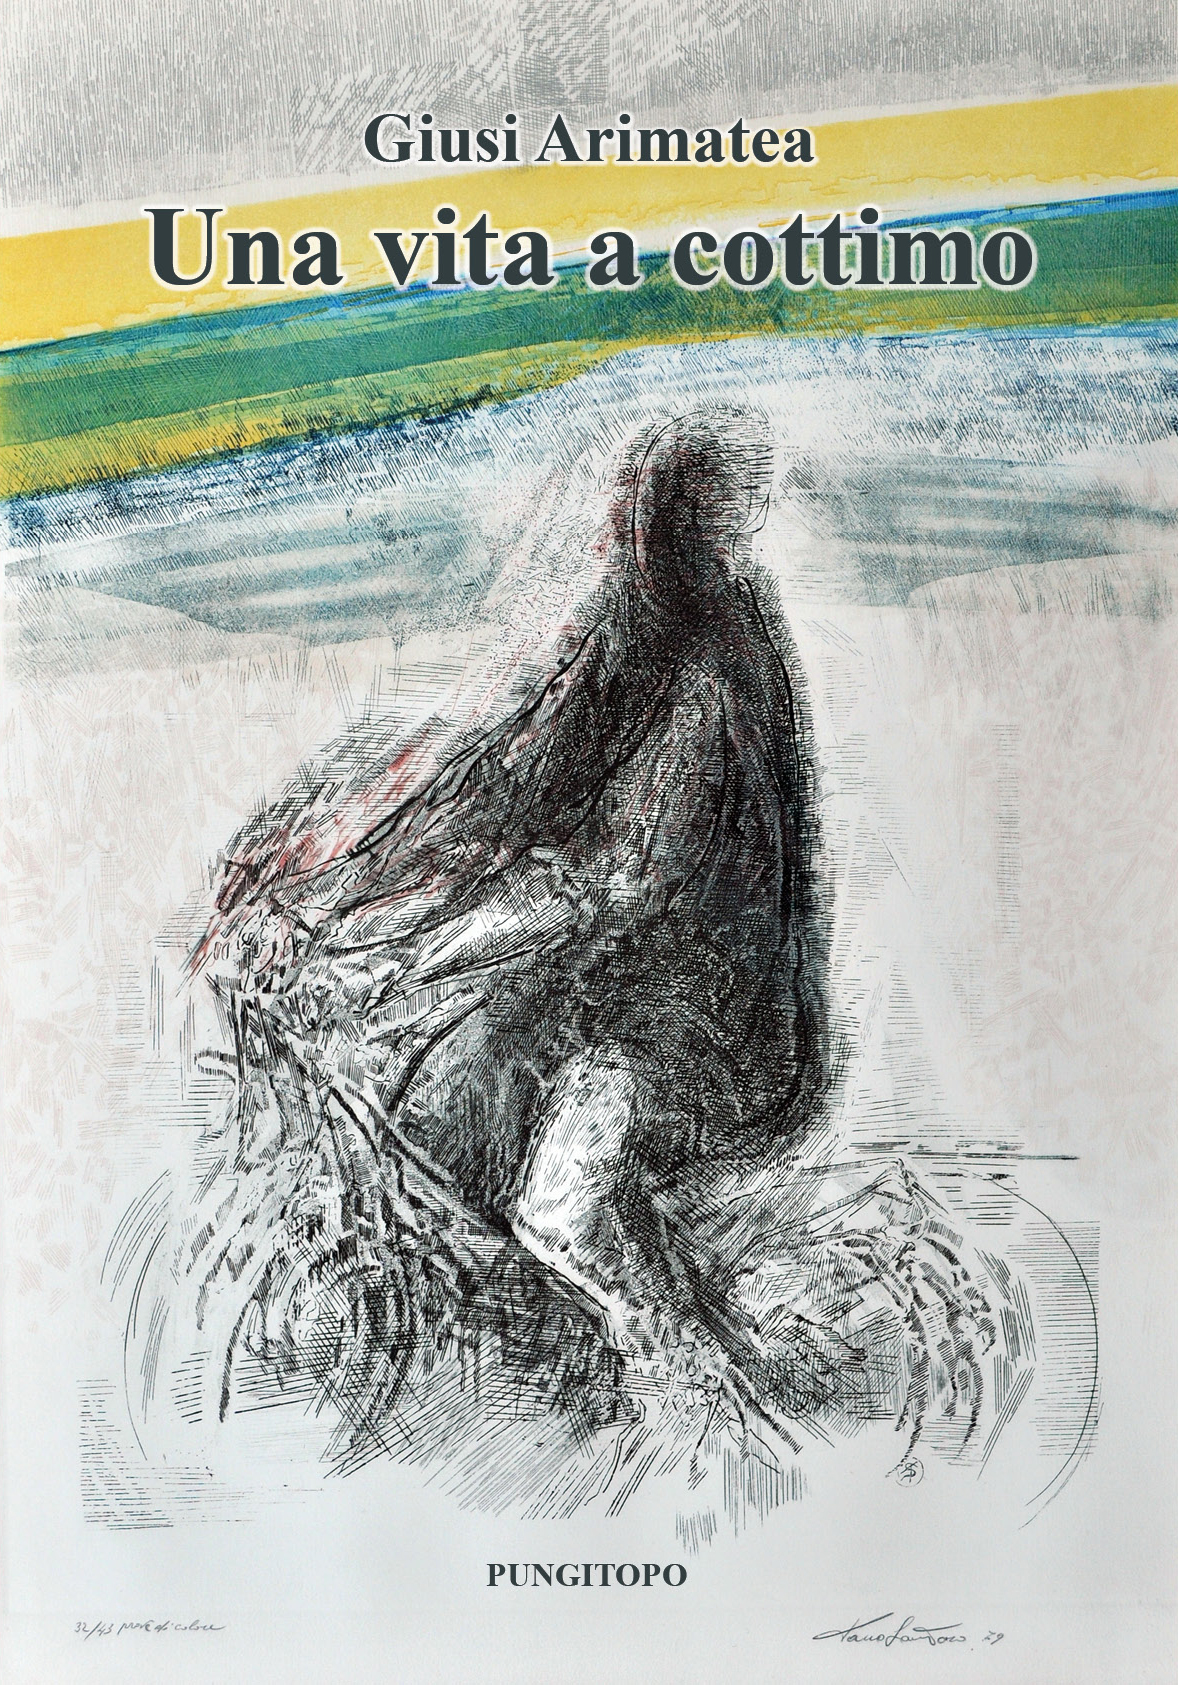 Clicca sulla cover per acquistare il romanzo di Giusi Arimatea